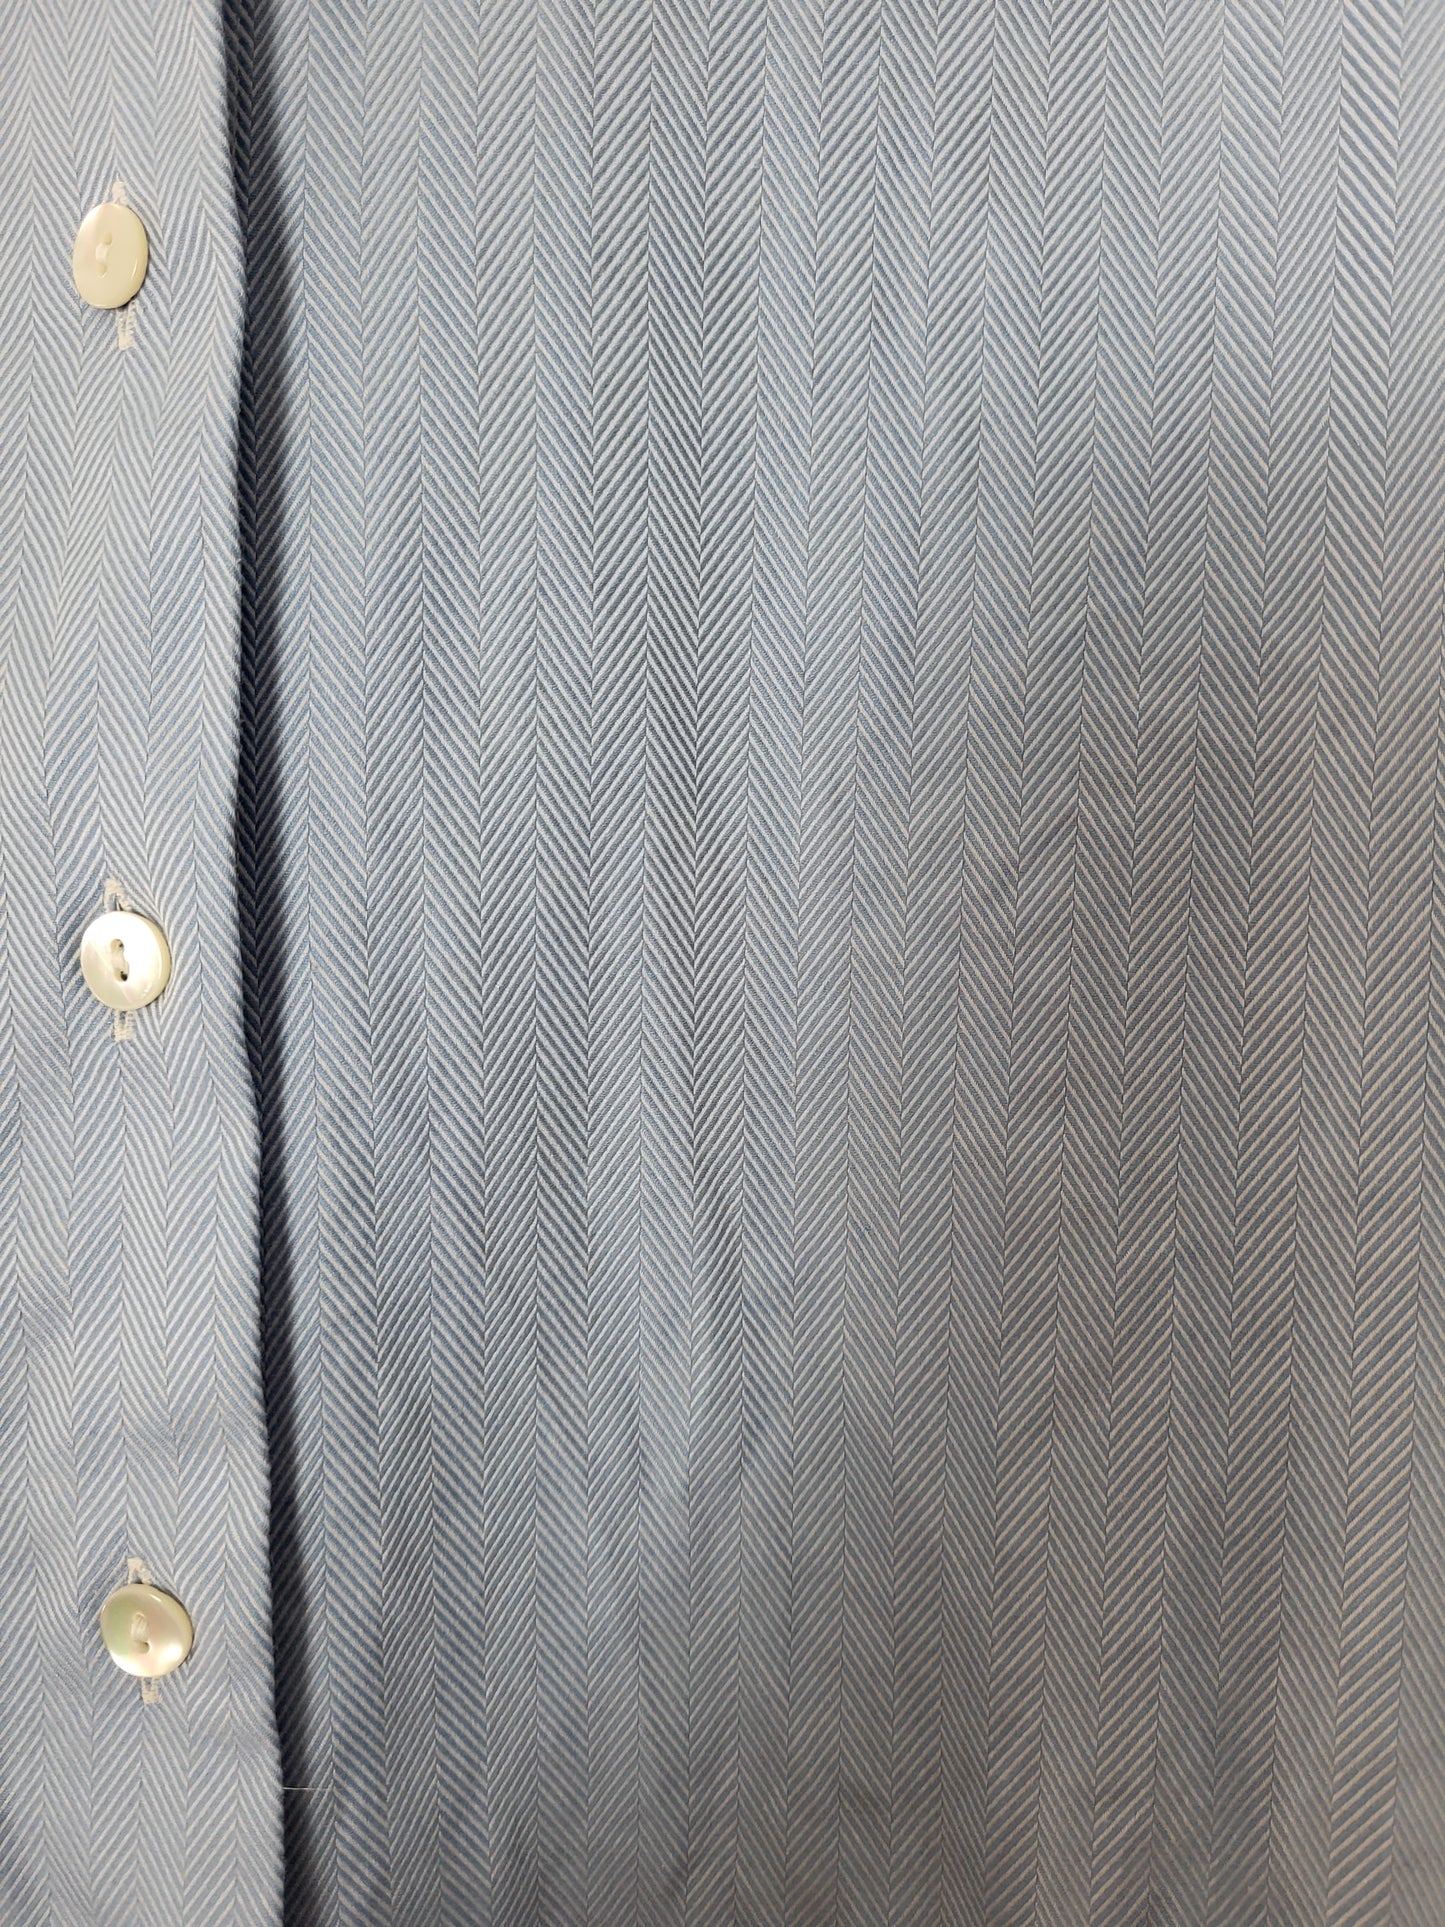 Burberry - Hemd - Streifen Muster - Vintage - Blau - Herren - M/L (42)